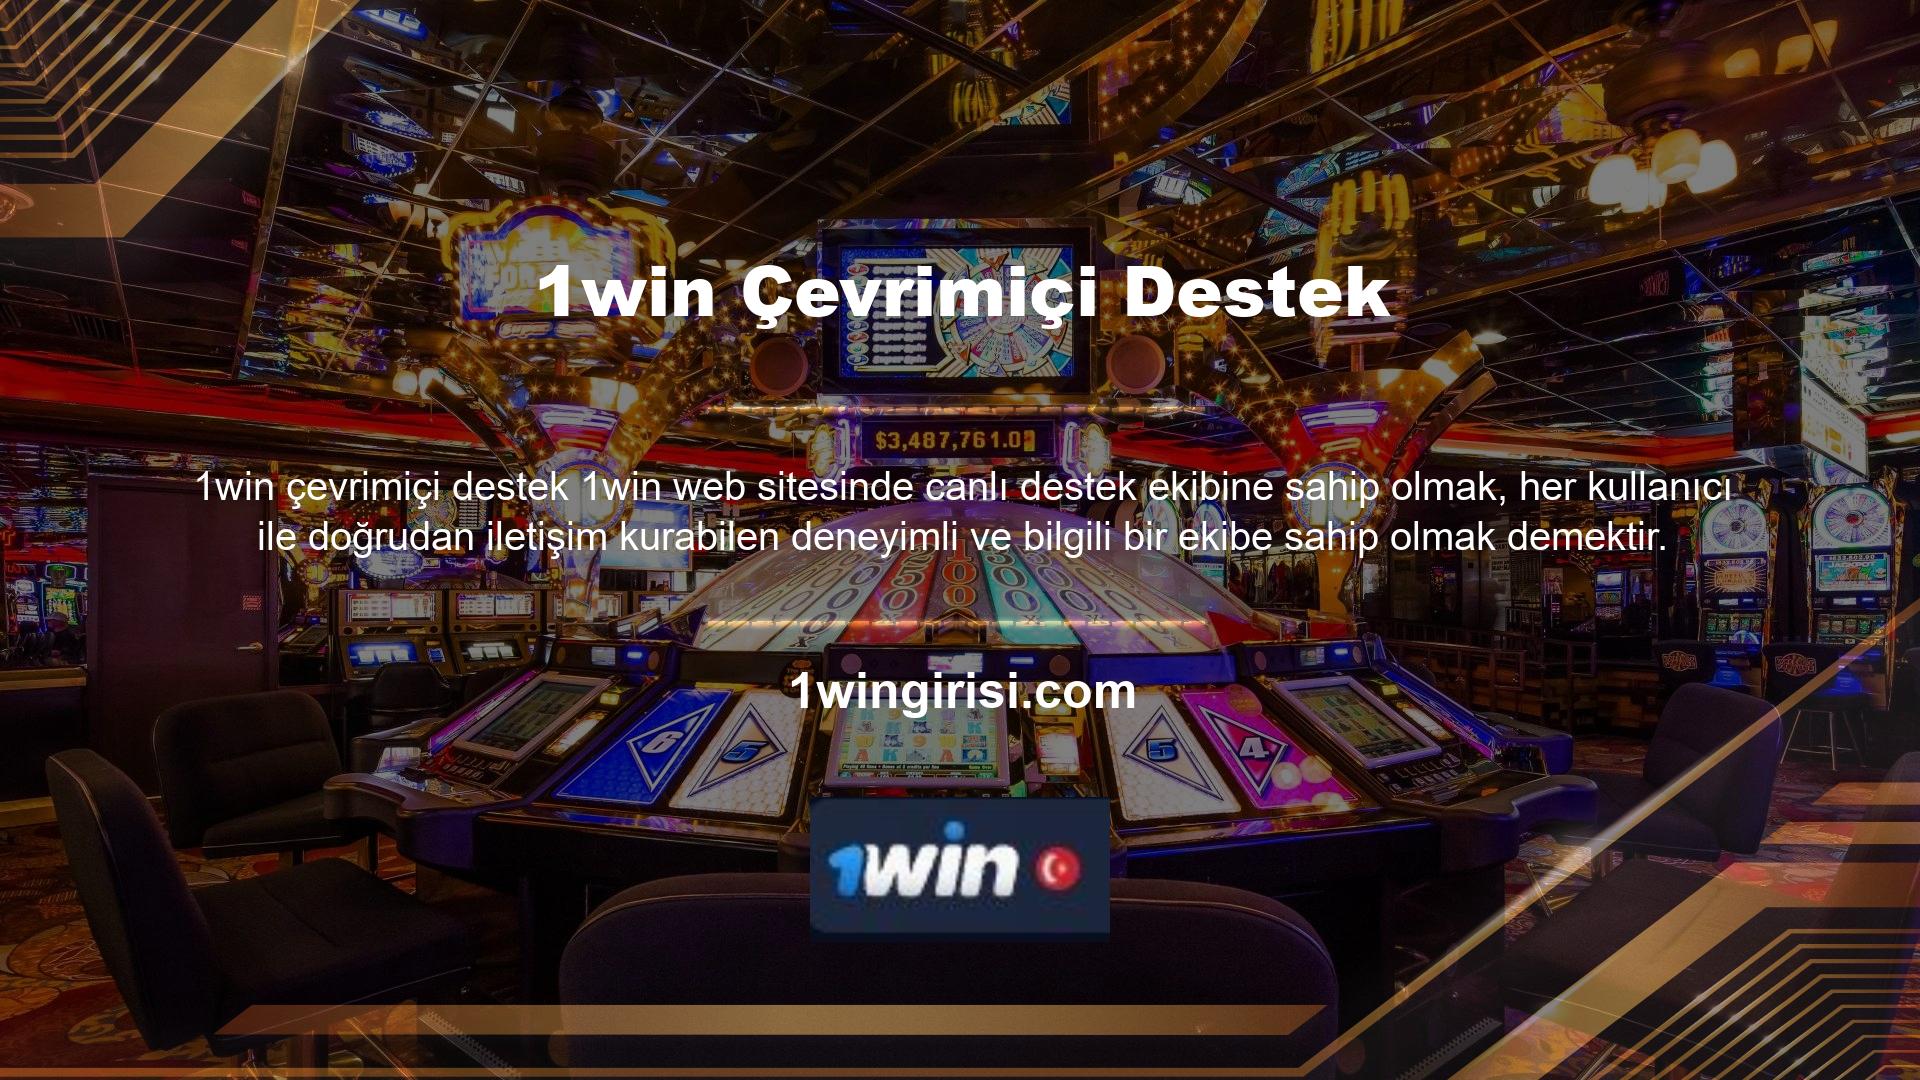 1win web sitesi bu konuda casino severler ile iletişime geçmekte ve kullanıcılarına kusursuz hizmet sunmaktadır